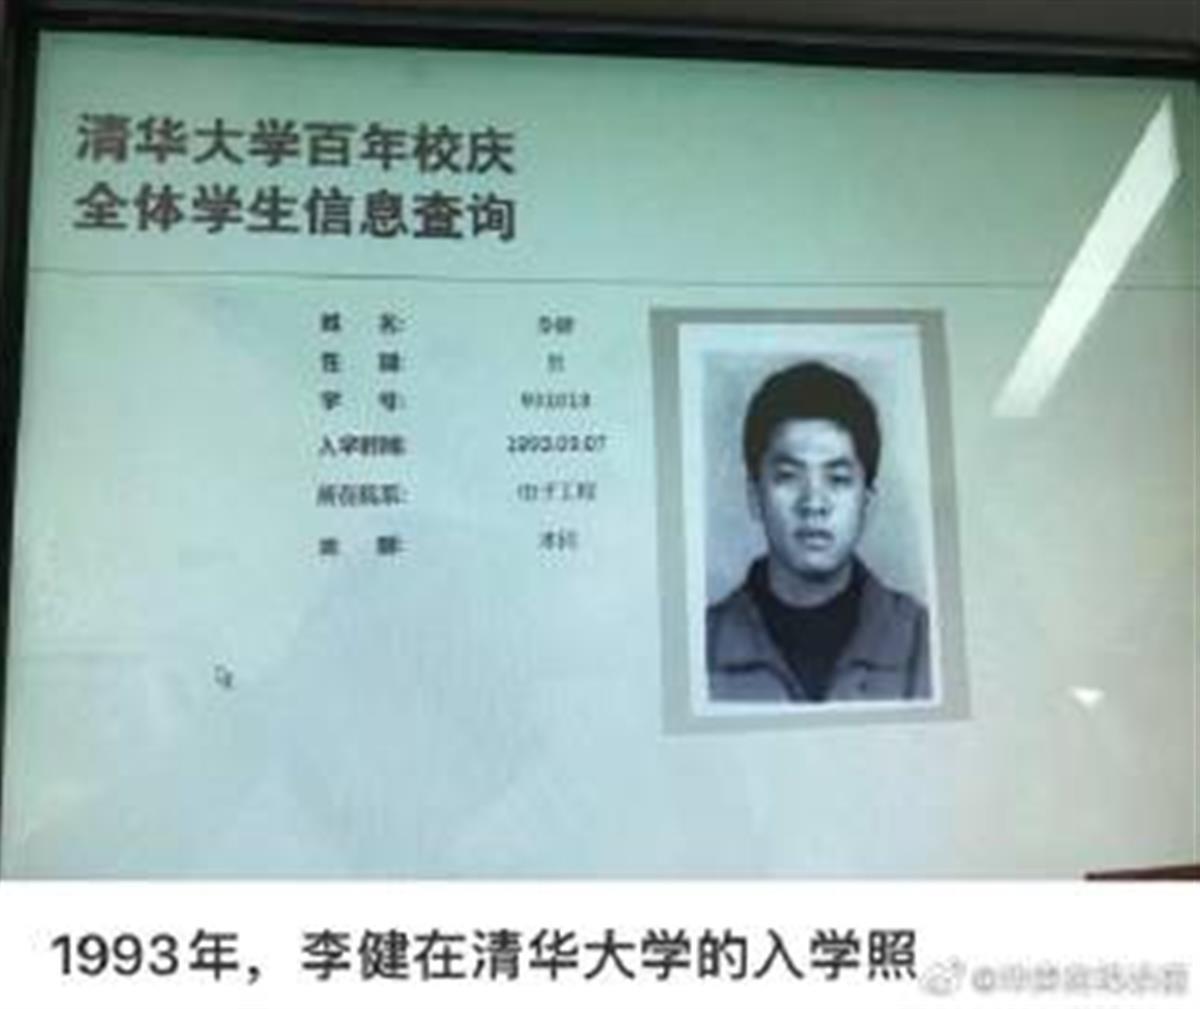 突然火了, 1993年李健在清华大学的入学照冲上热搜